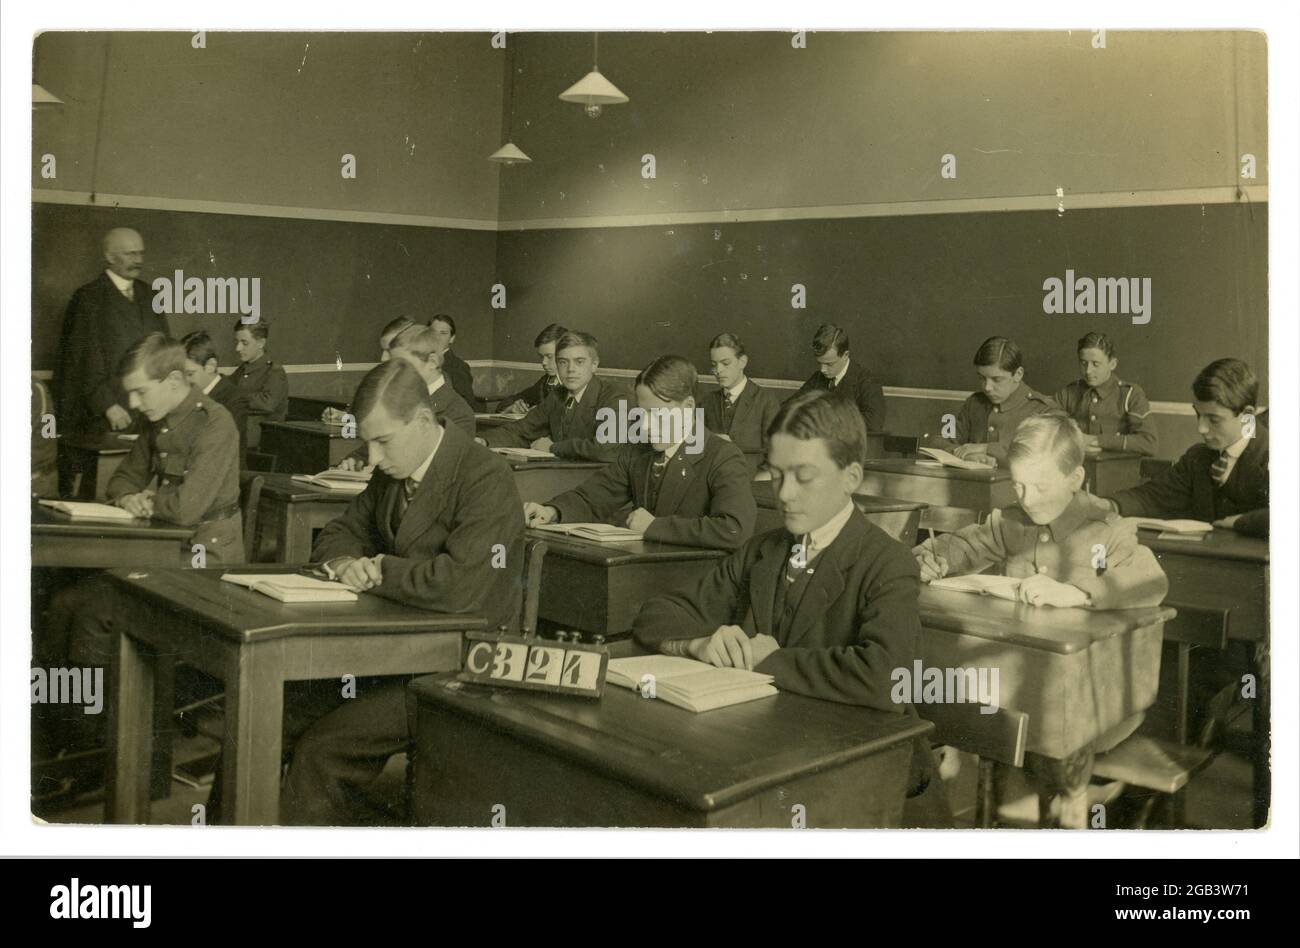 Carte postale originale du début des années 1900, datant de la première Guerre mondiale, de jeunes hommes assis à leur bureau dans une salle de classe, certains en uniforme, du studio de J&G Taylor, 631 Green Lanes, North London, Royaume-Uni vers 1914-1918 Banque D'Images